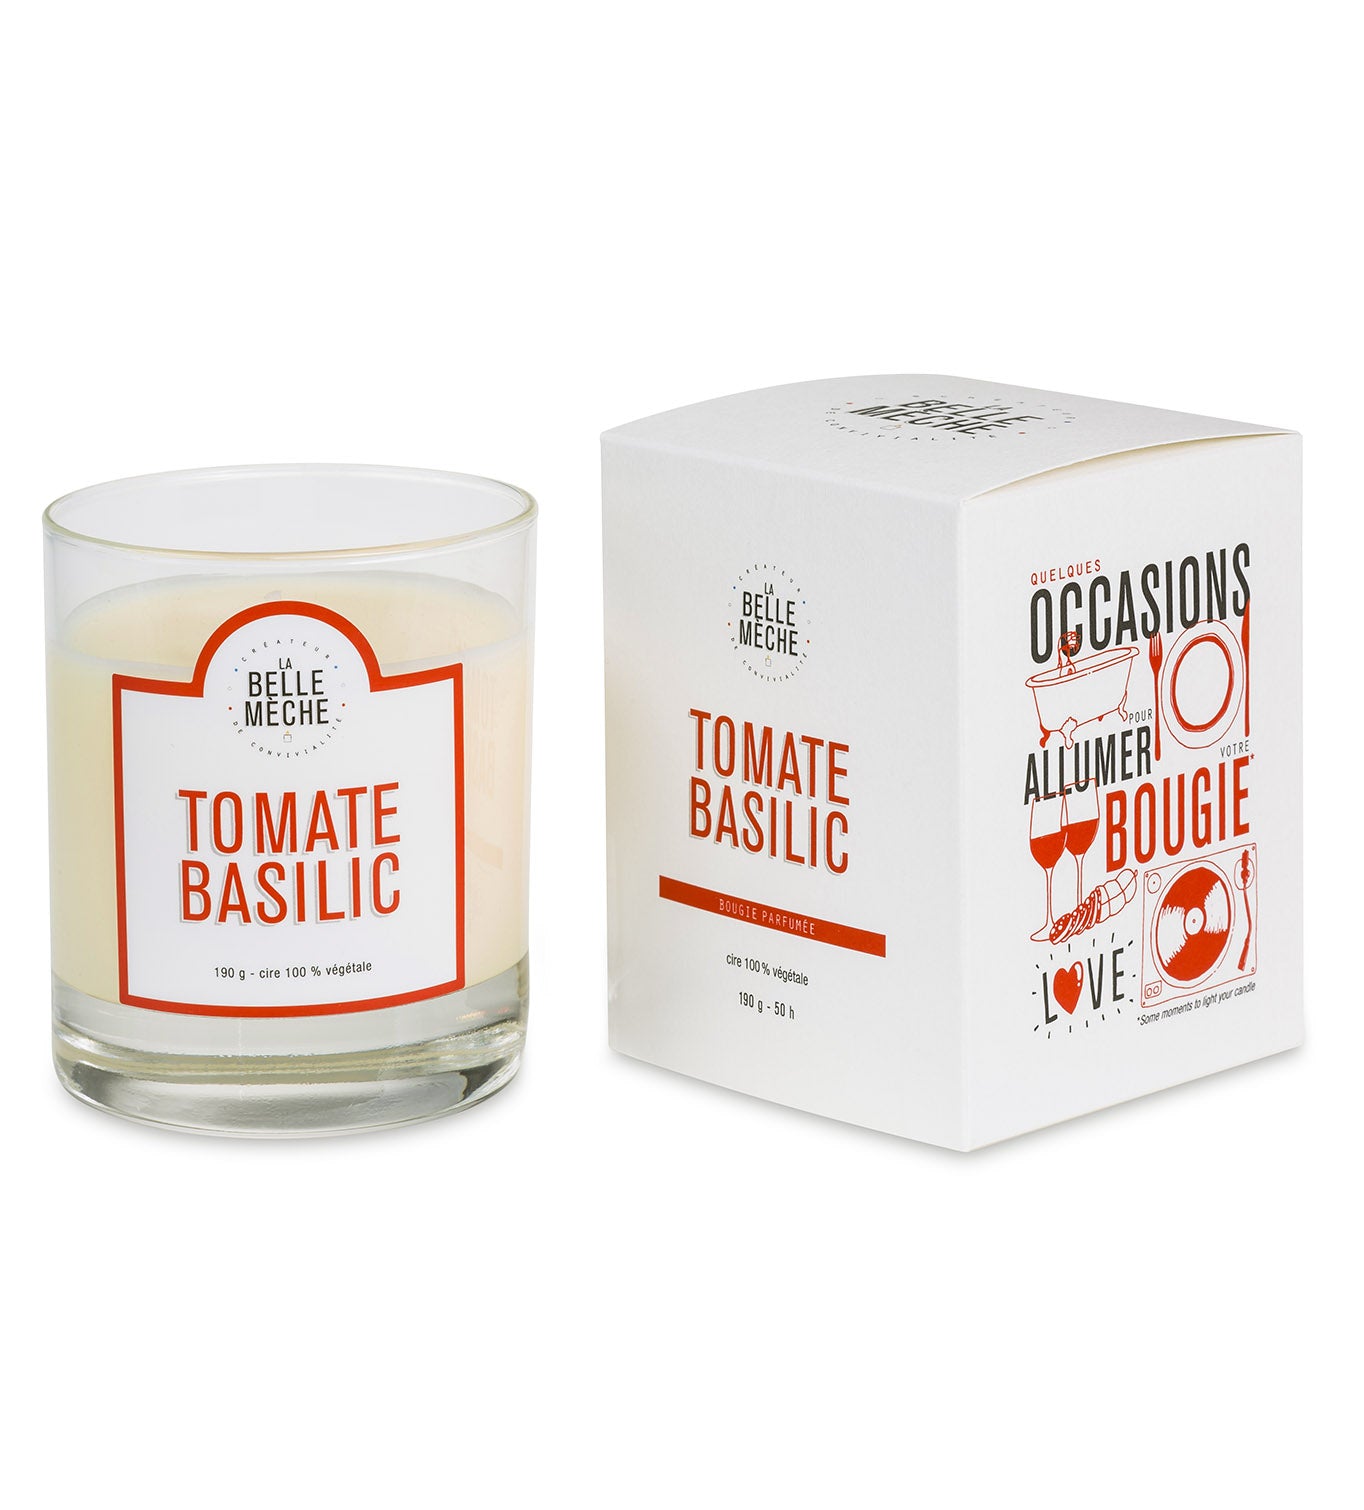 Nouveaux packagings pour nos bougies parfumées La Belle Mèche